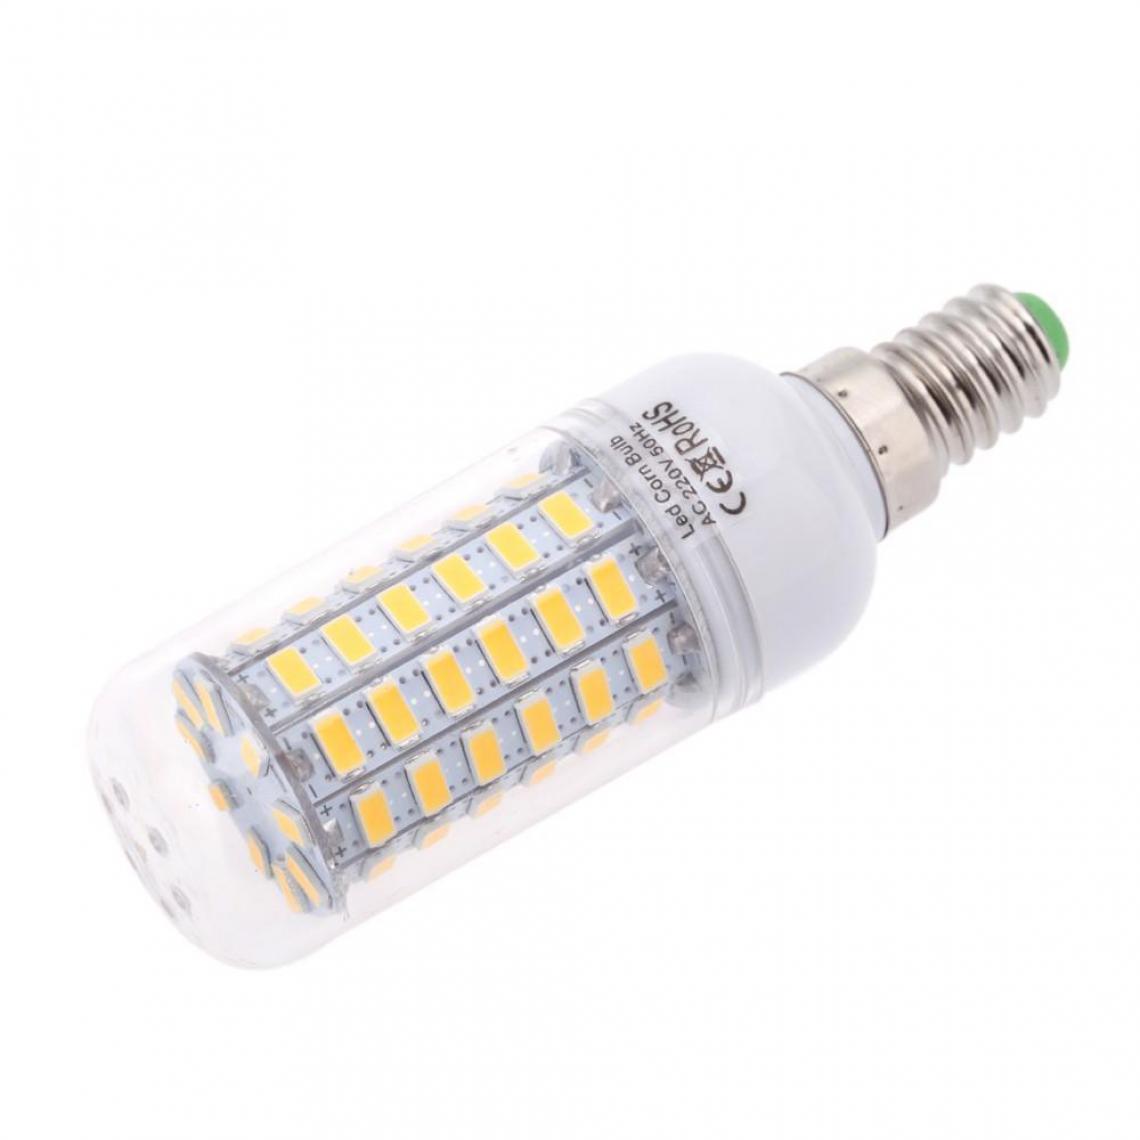 Justgreenbox - Ampoule de maïs à économie d'énergie 360 degrés 200-240V E14, Cold Blanc, 7W - Ampoules LED